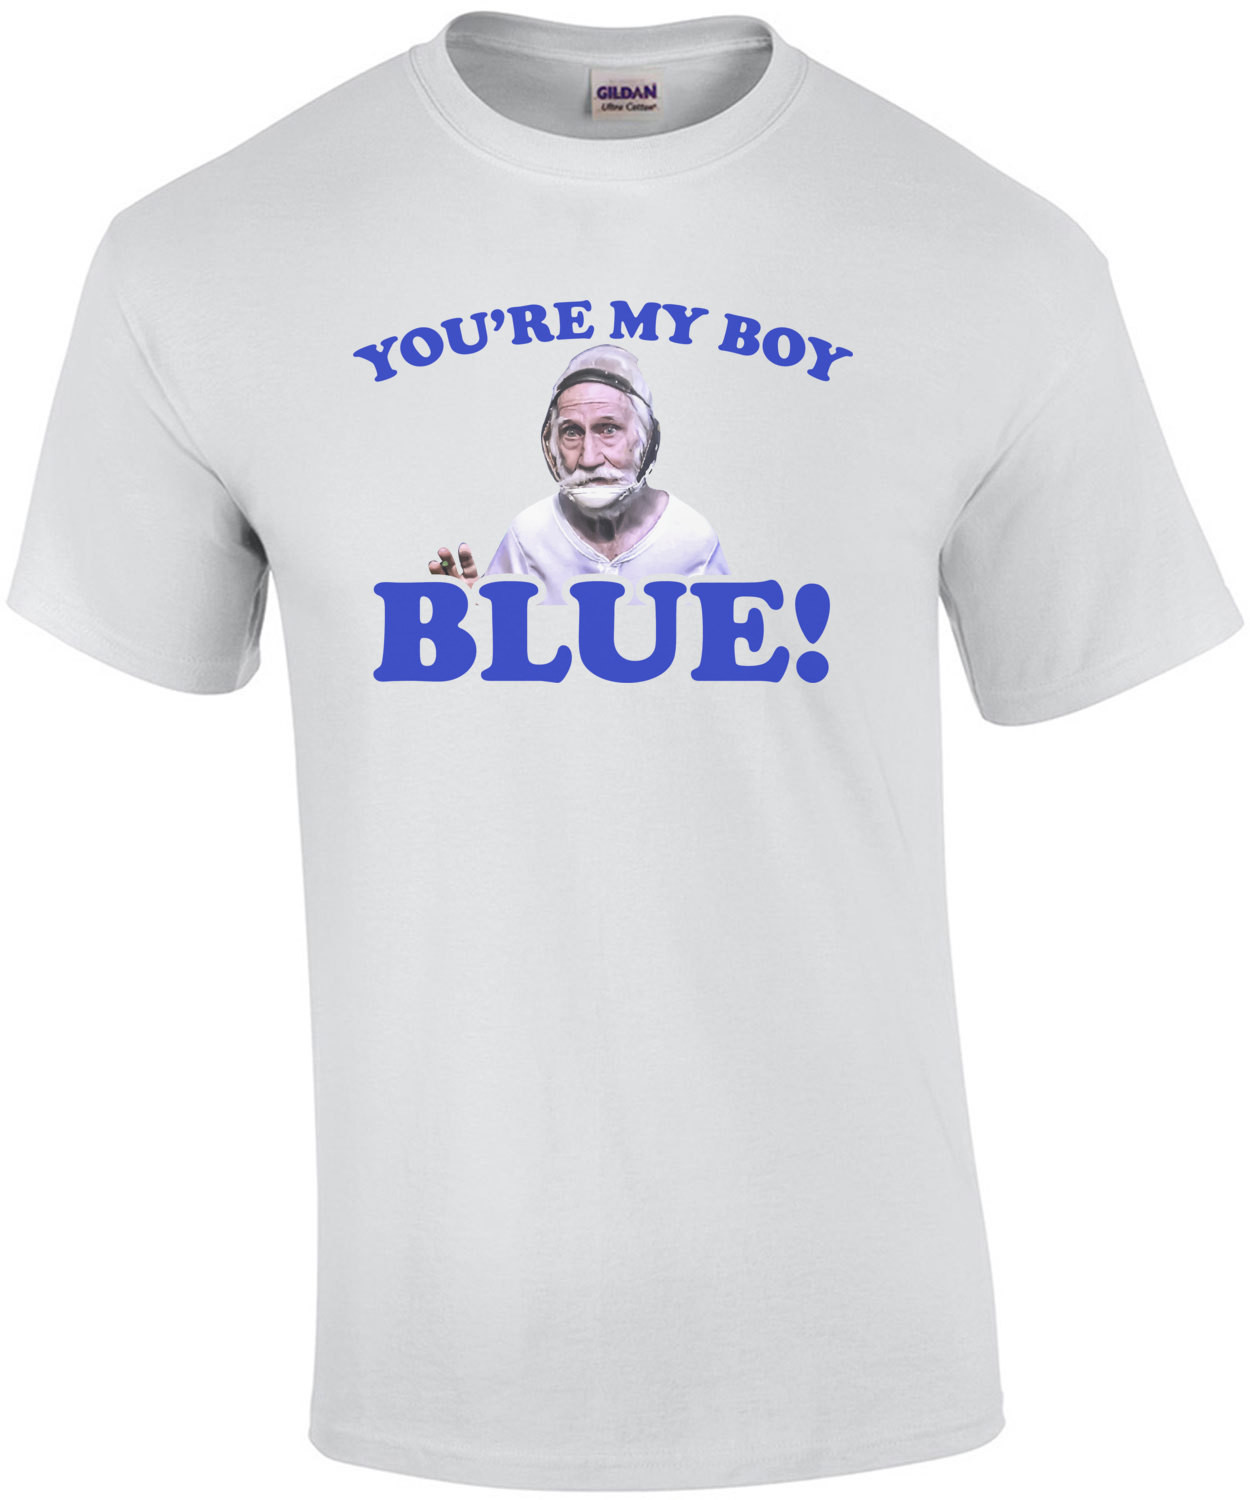 You're my boy blue - old school t-shirt - will ferell t-shirt - 2000's t-shirt